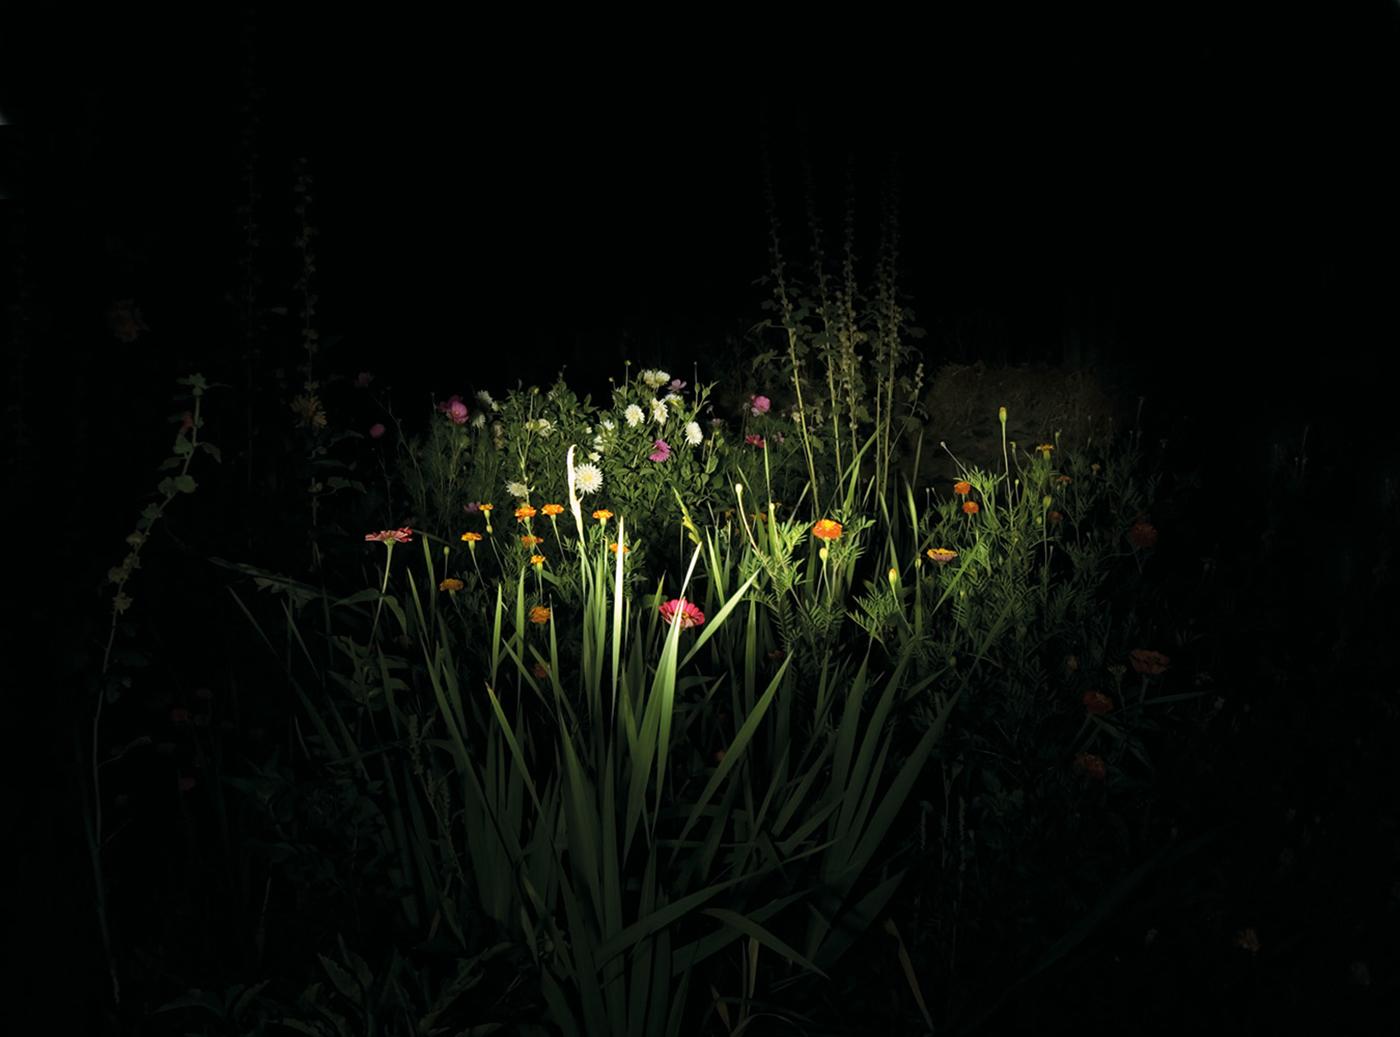 Night Garden - Zeitgenössisch, Landschaft, 21. Jahrhundert, Farbe, Nacht